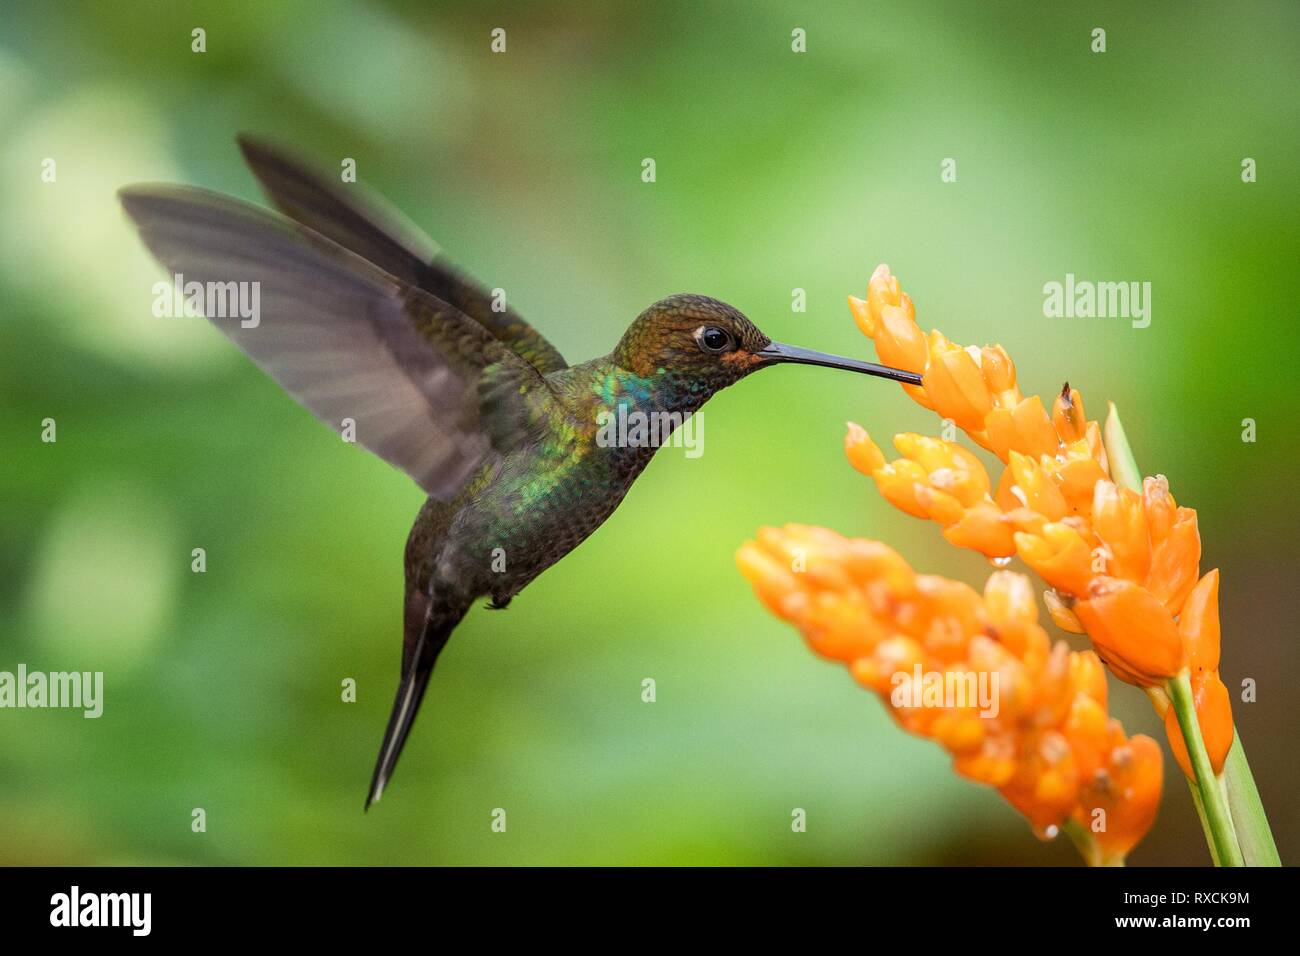 Hummingbird schwebt Neben orange Blumen, Garten, tropischer Wald, Brasilien, Vogel im Flug mit ausgebreiteten Flügeln, flying Kolibri Nektar saugen Fro Stockfoto